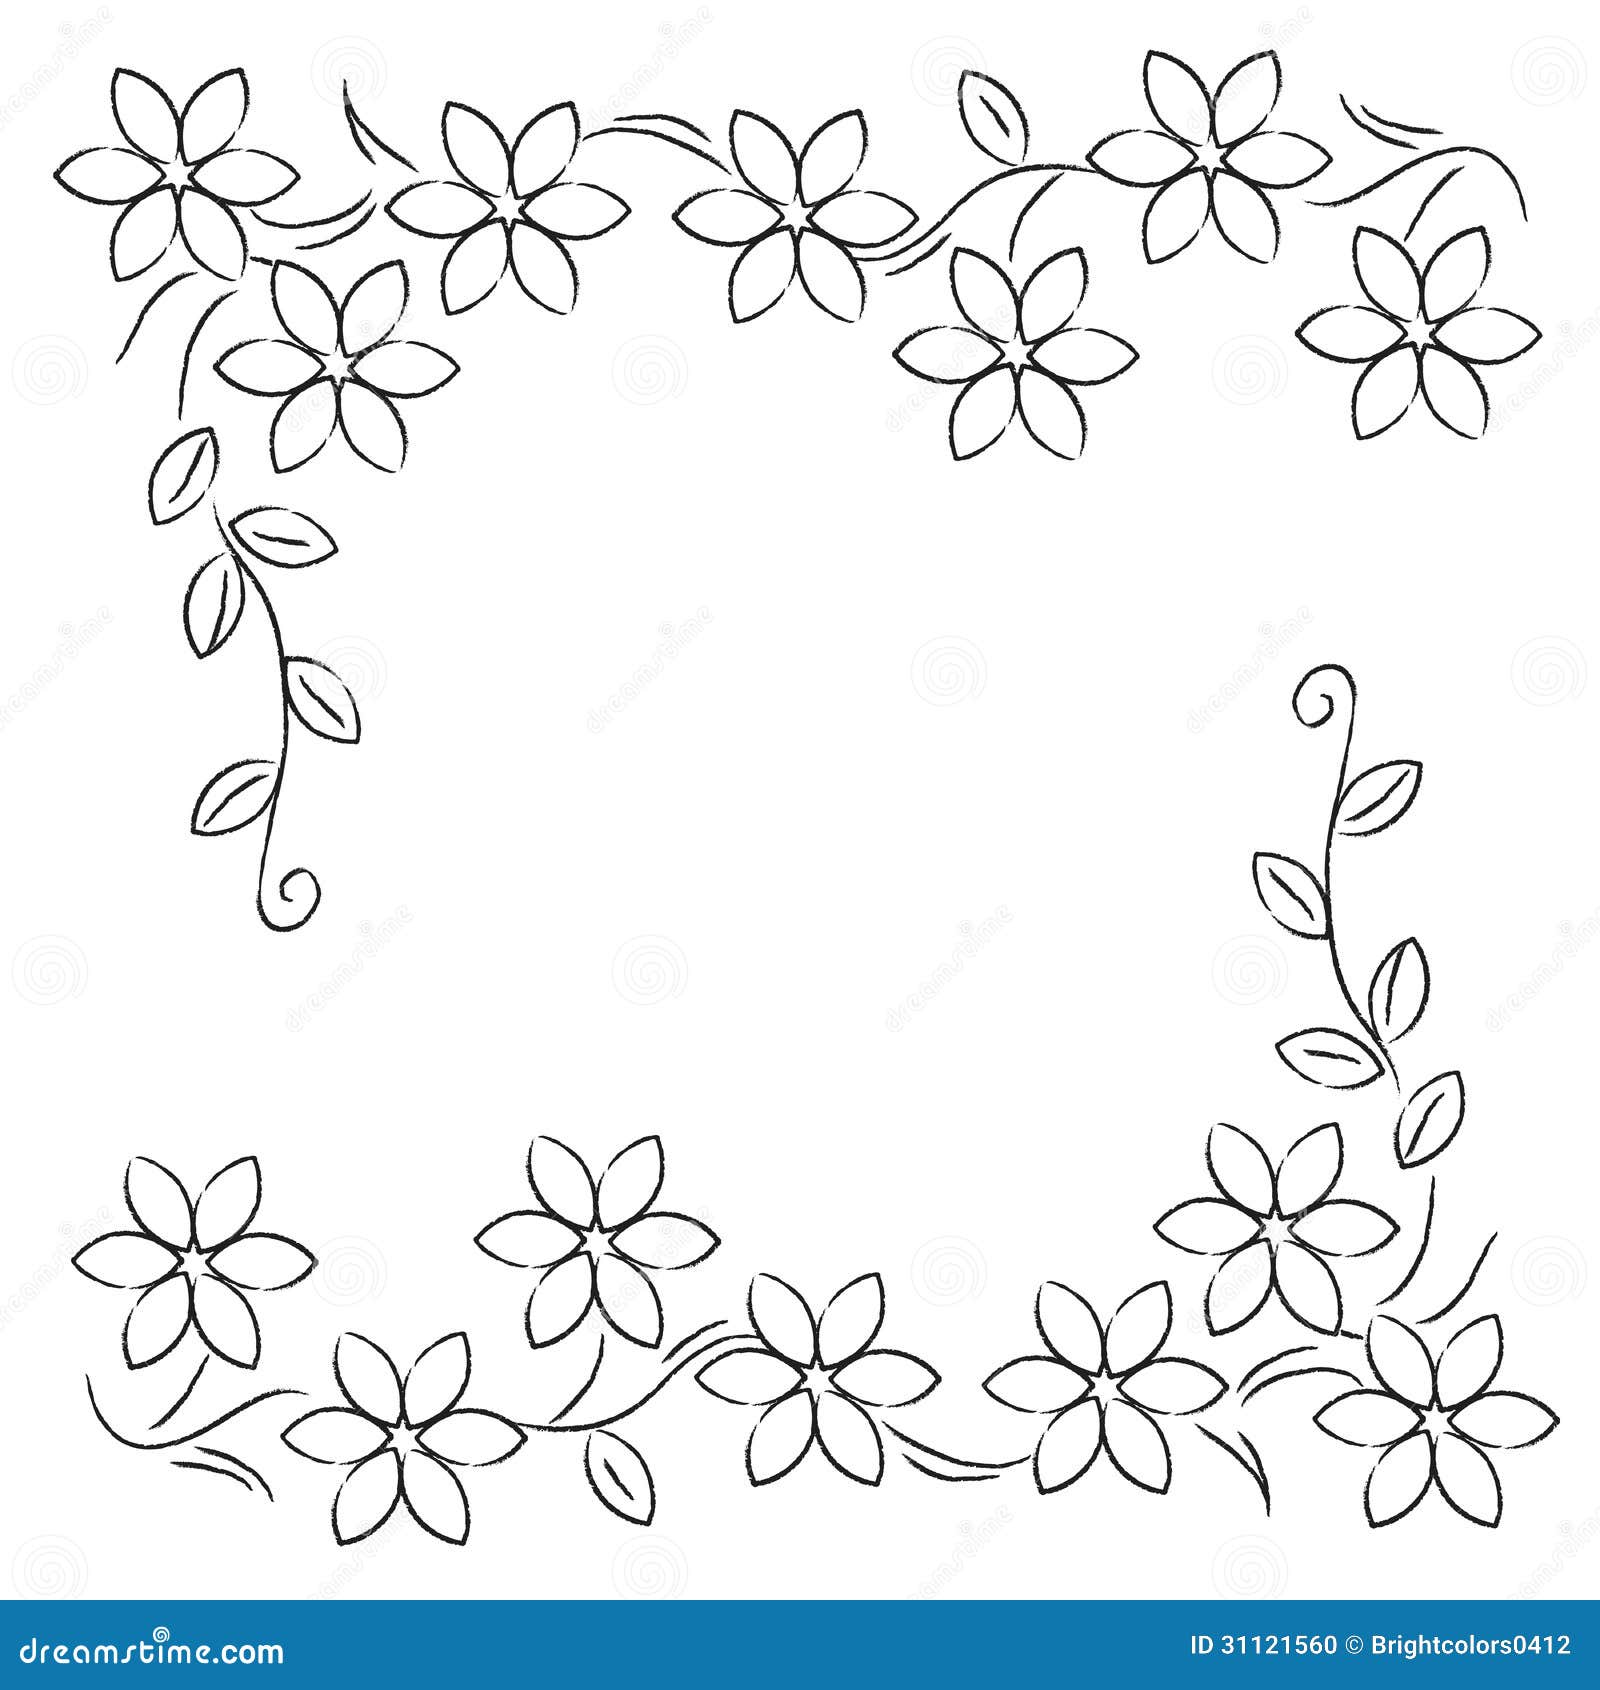 Flower Line Border Black White Stock Photo - Image: 31121560